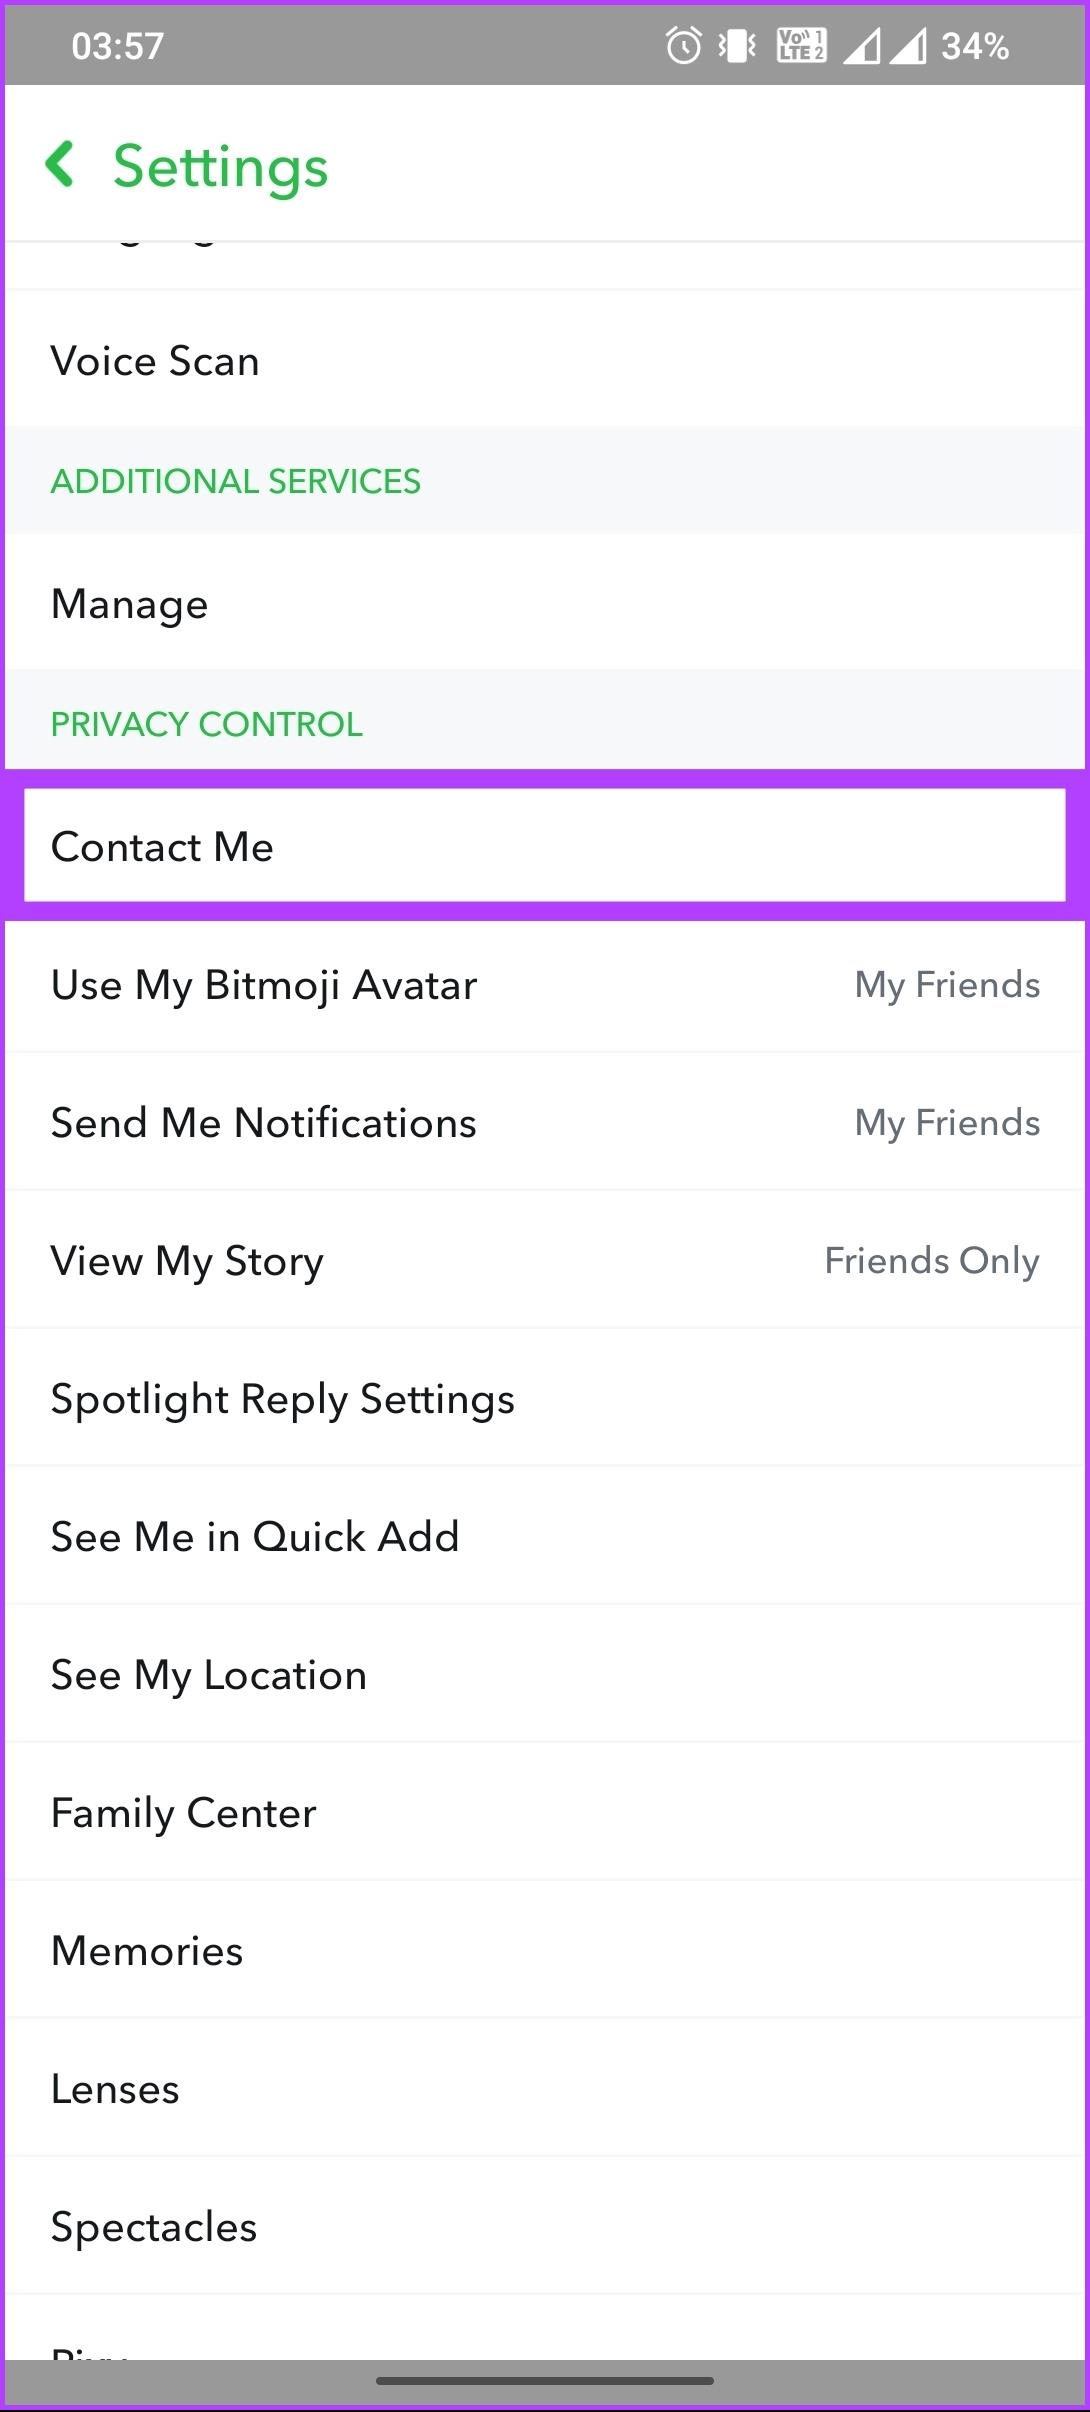 Snapchat에서 친구를 삭제하는 방법: 2가지 빠른 방법